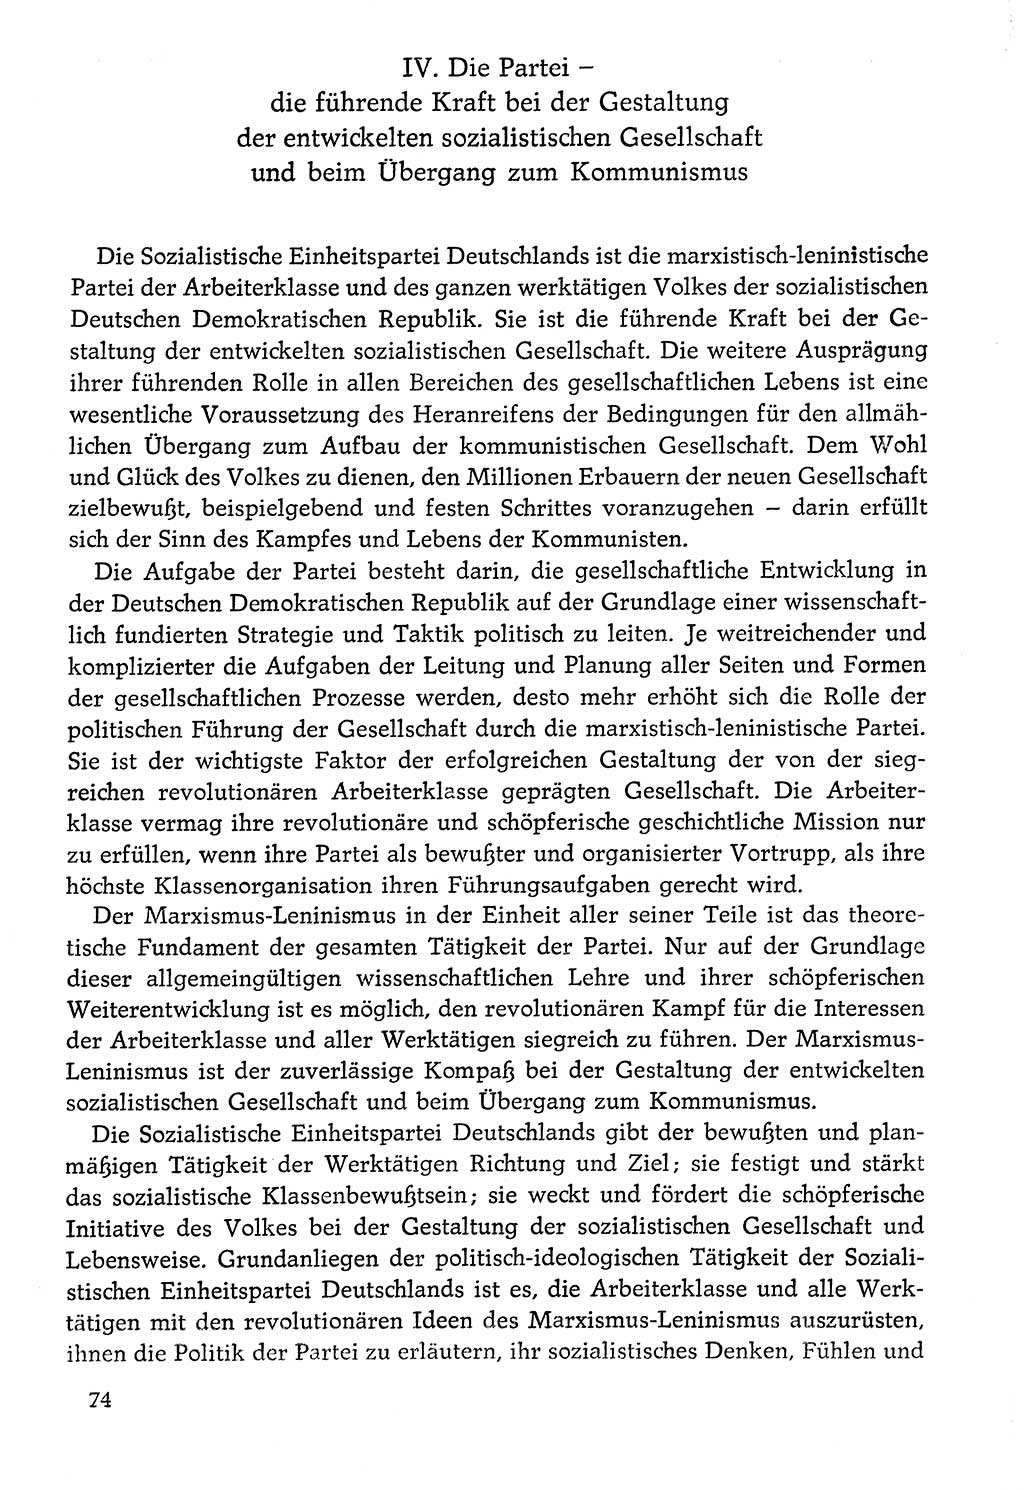 Dokumente der Sozialistischen Einheitspartei Deutschlands (SED) [Deutsche Demokratische Republik (DDR)] 1976-1977, Seite 74 (Dok. SED DDR 1976-1977, S. 74)